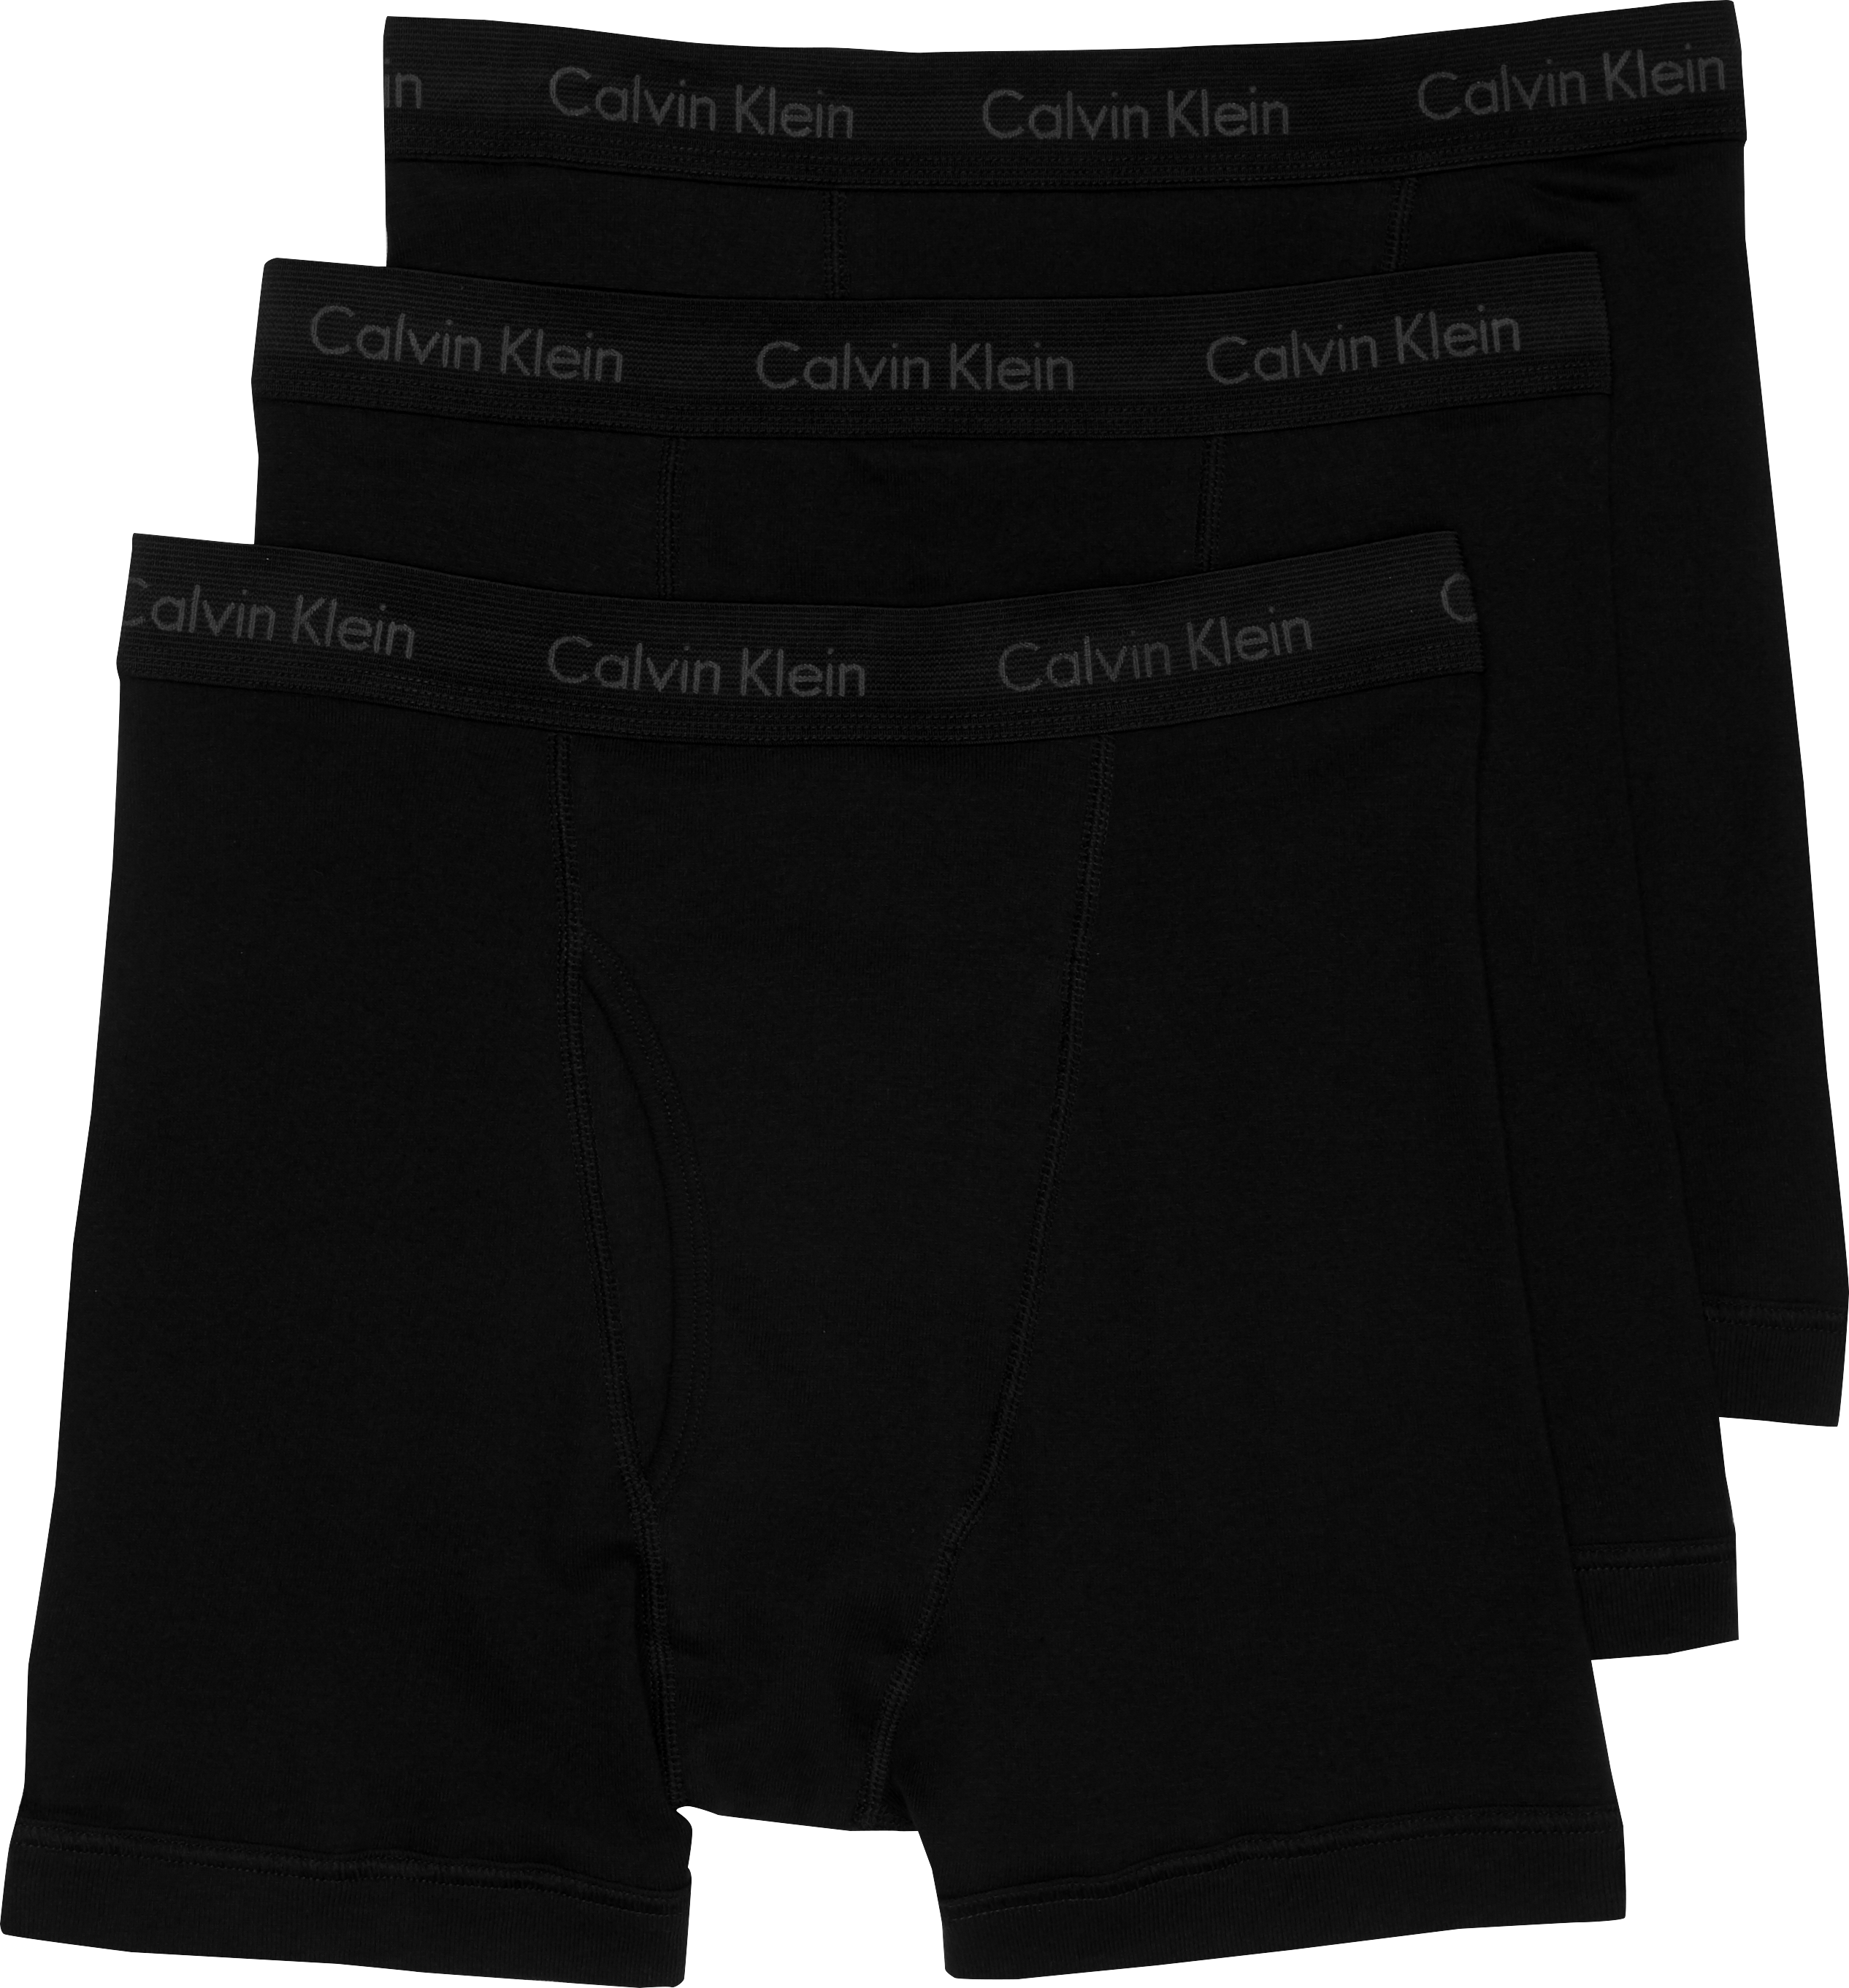 Calvin Klein Black Cotton Classic Boxer Briefs, 3-Pack - Men's ...